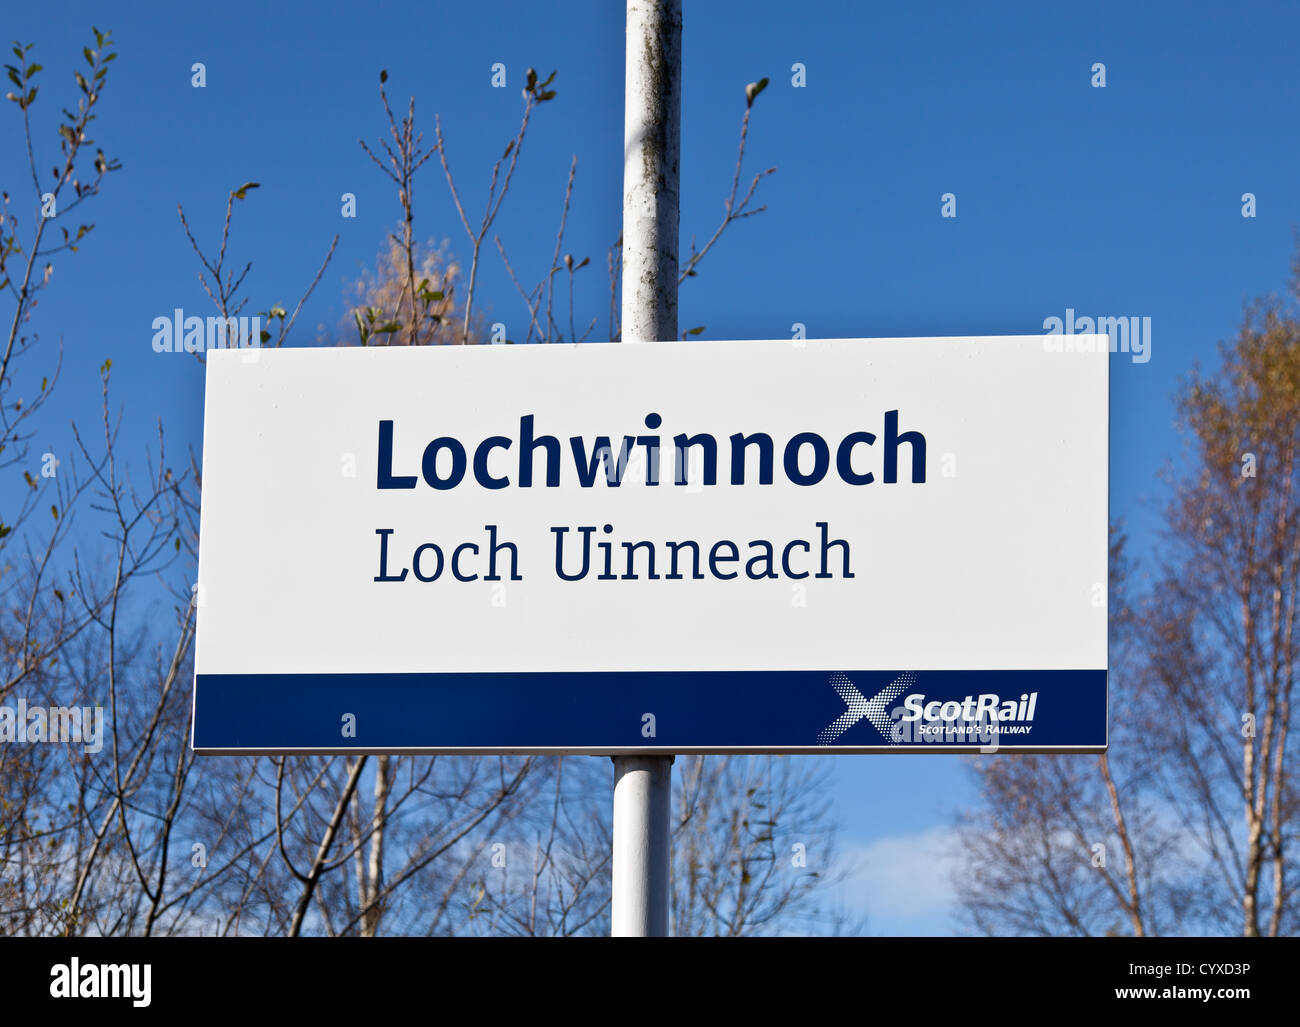 Segno in Lochwinnoch stazione ferroviaria, Scozia, con traduzione in gaelico Loch Uinneach. Foto Stock